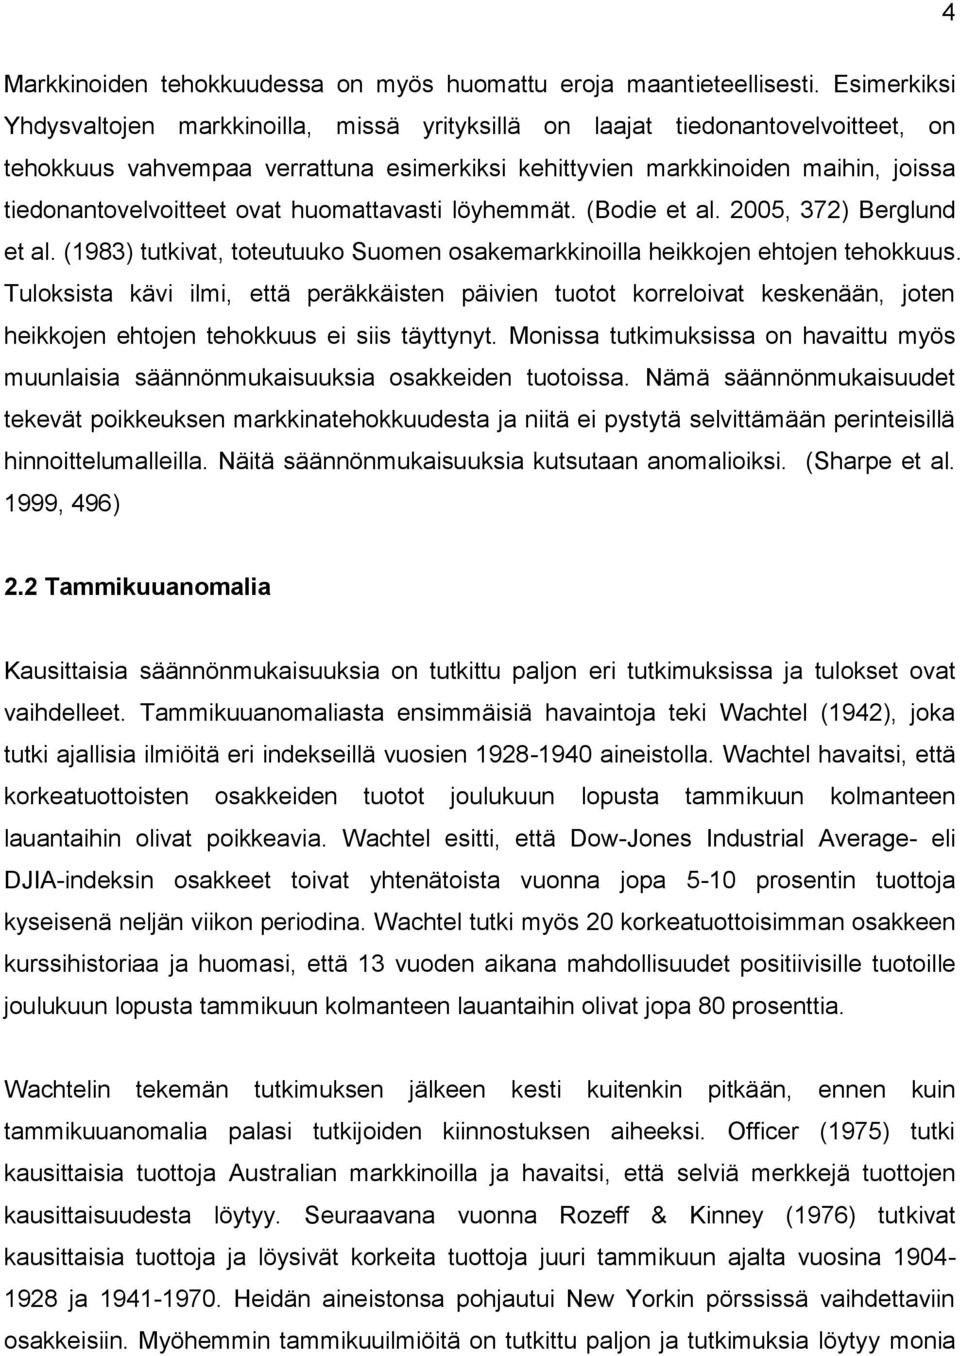 löyhemmä. (Bodie e al. 2005, 372) Berglund e al. (1983) ukiva, oeuuuko Suomen osakemarkkinoilla heikkojen ehojen ehokkuus.